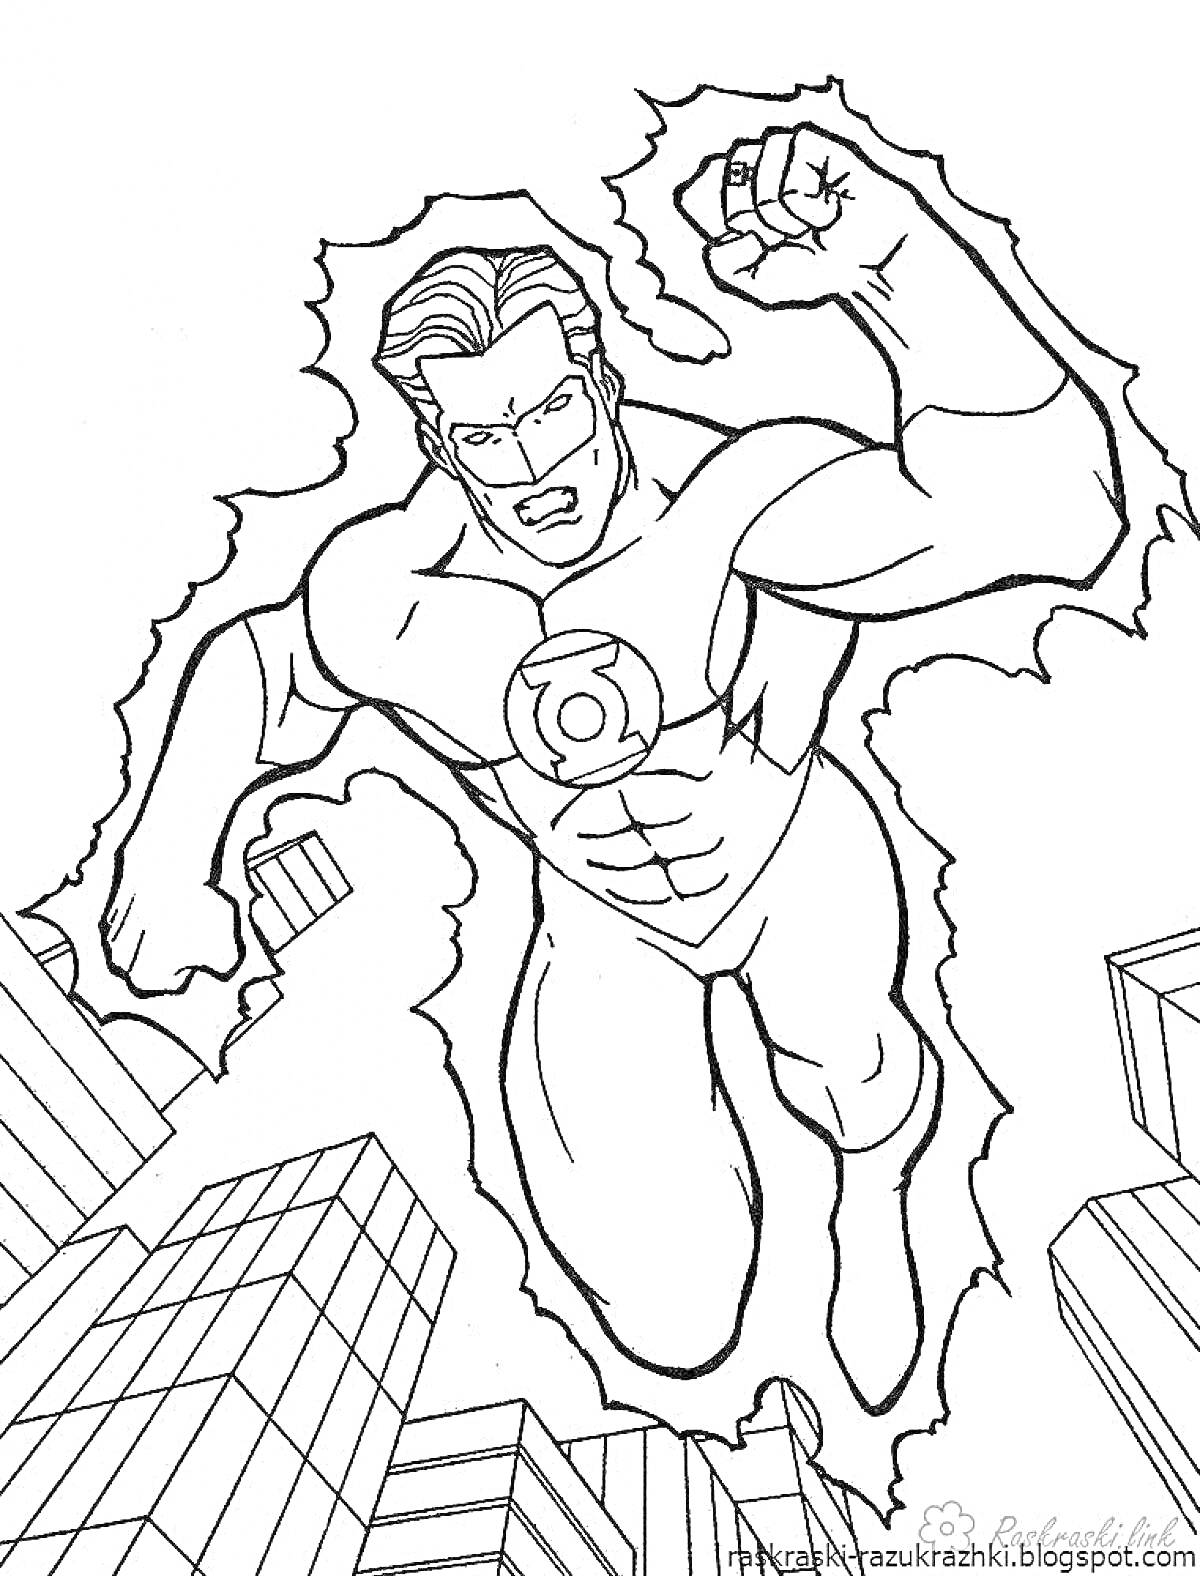 Раскраска Супергерой летит над городом с поджатыми кулаками